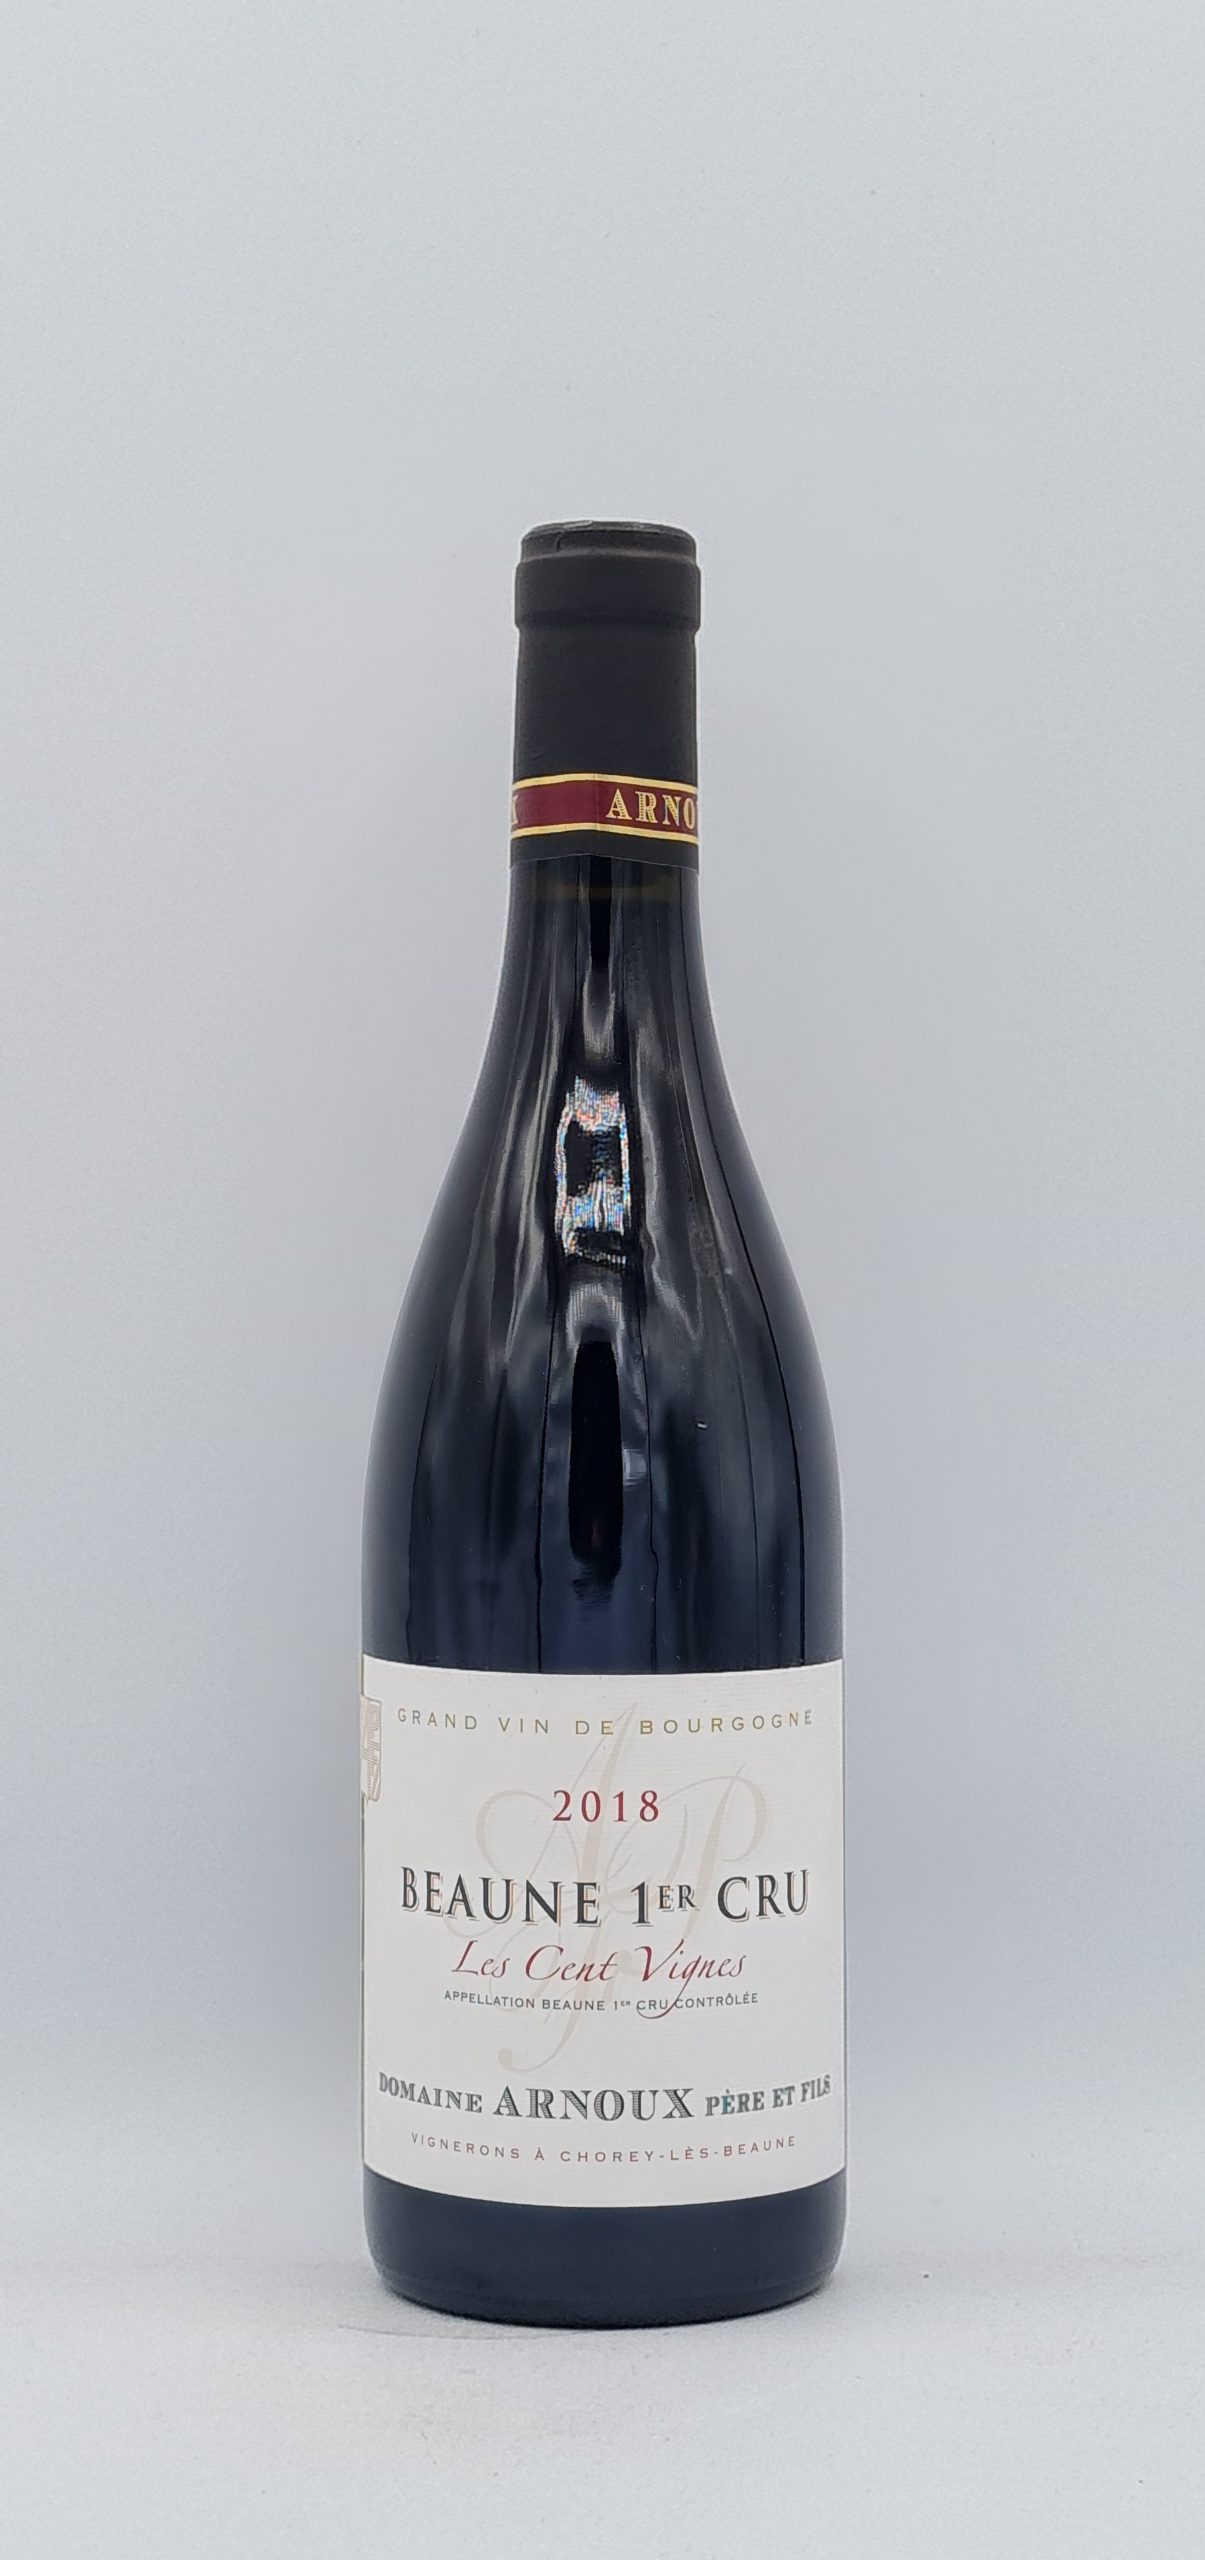 Bourgogne Beaune 1er cru “Les Cents Vignes” 2018 Domaine Arnoux